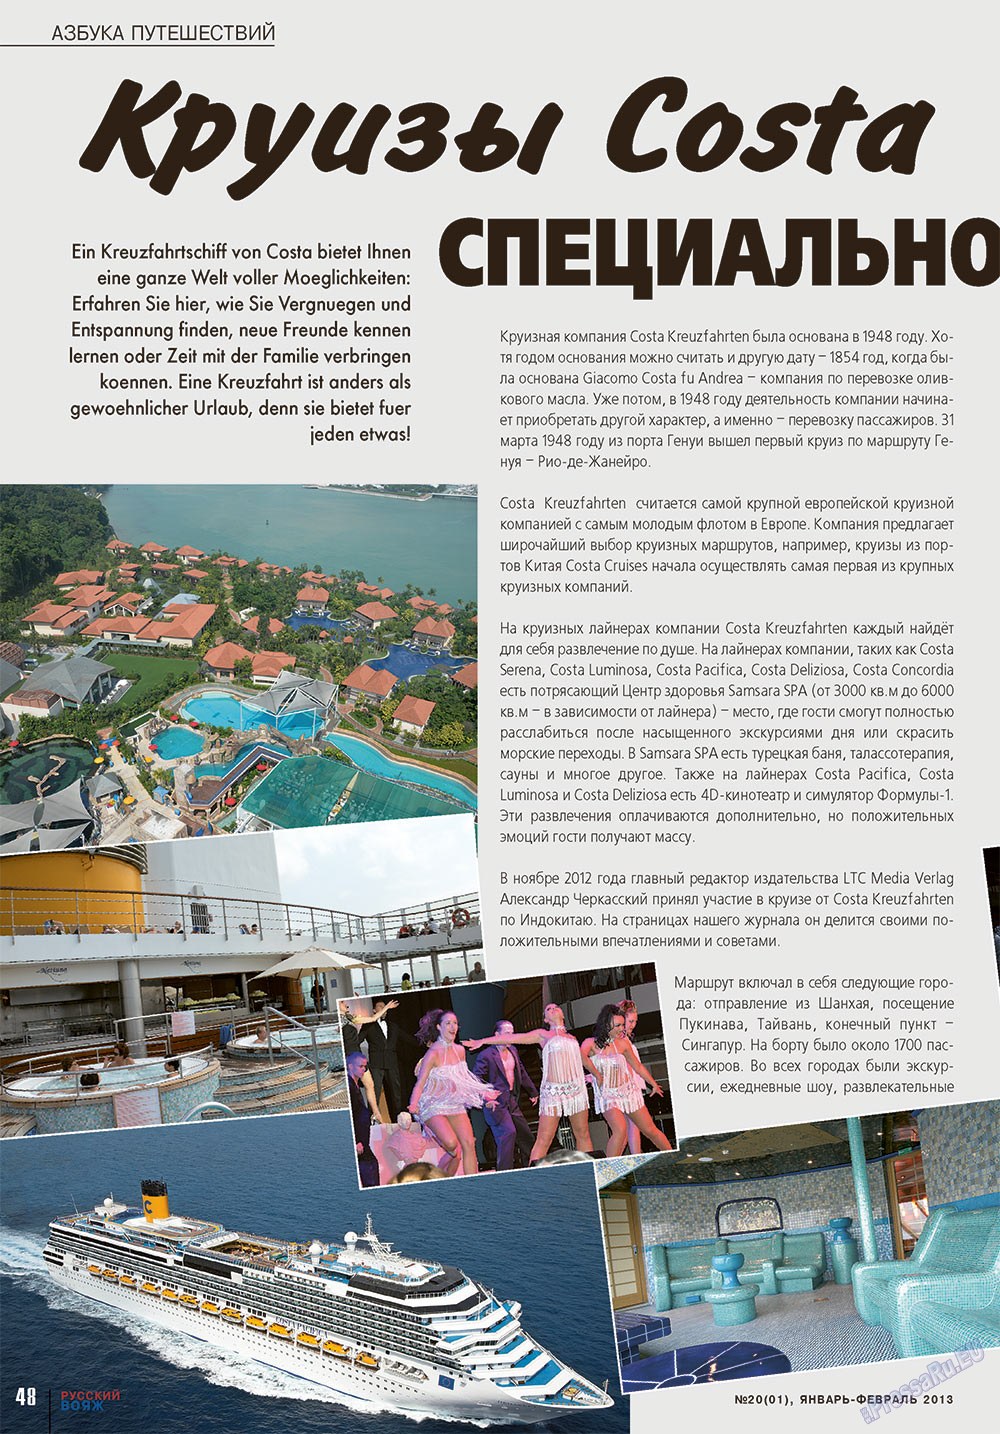 Русский вояж (журнал). 2013 год, номер 20, стр. 48